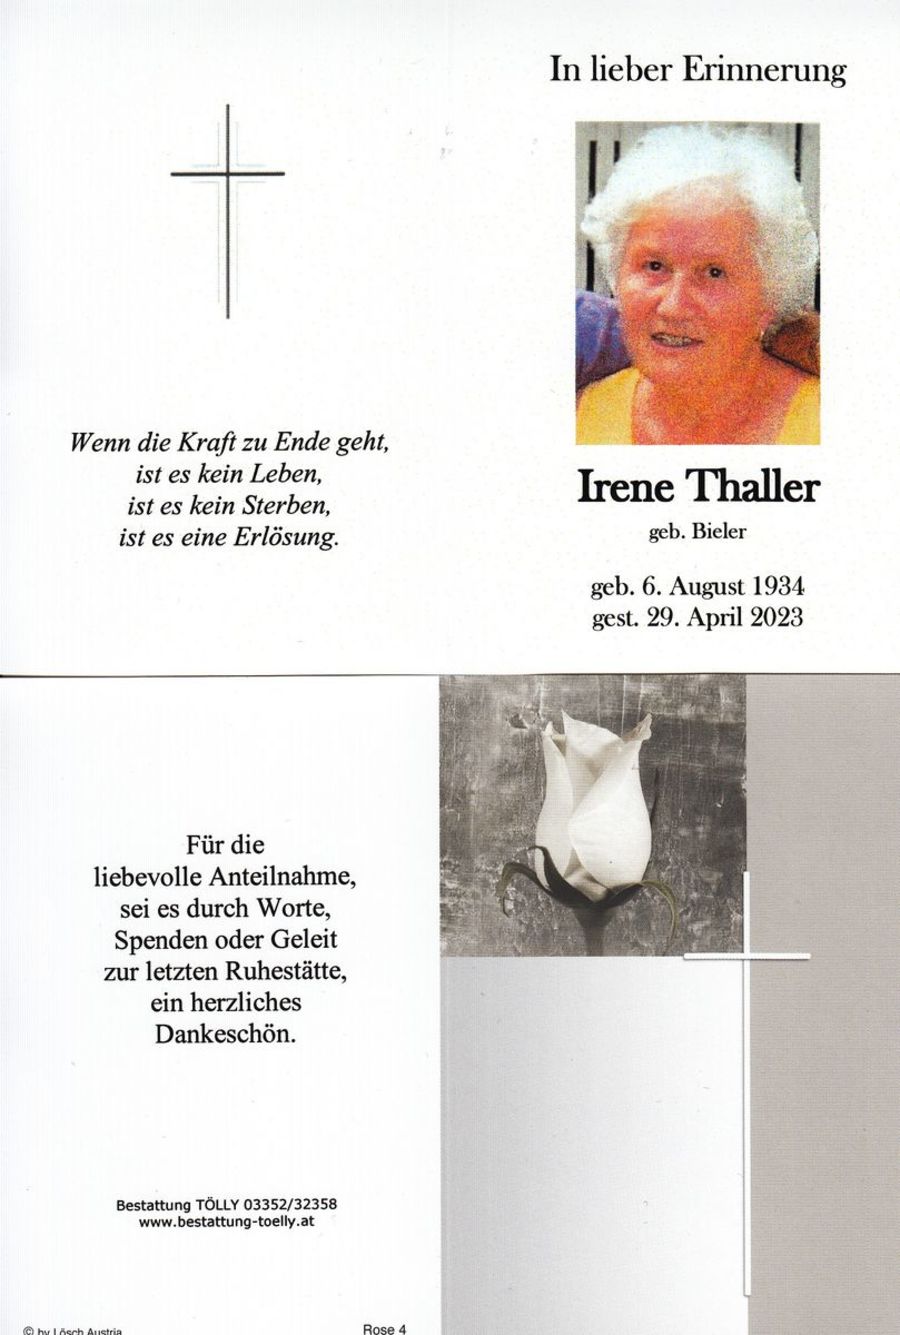 Gedenkkarte Irene Thaller